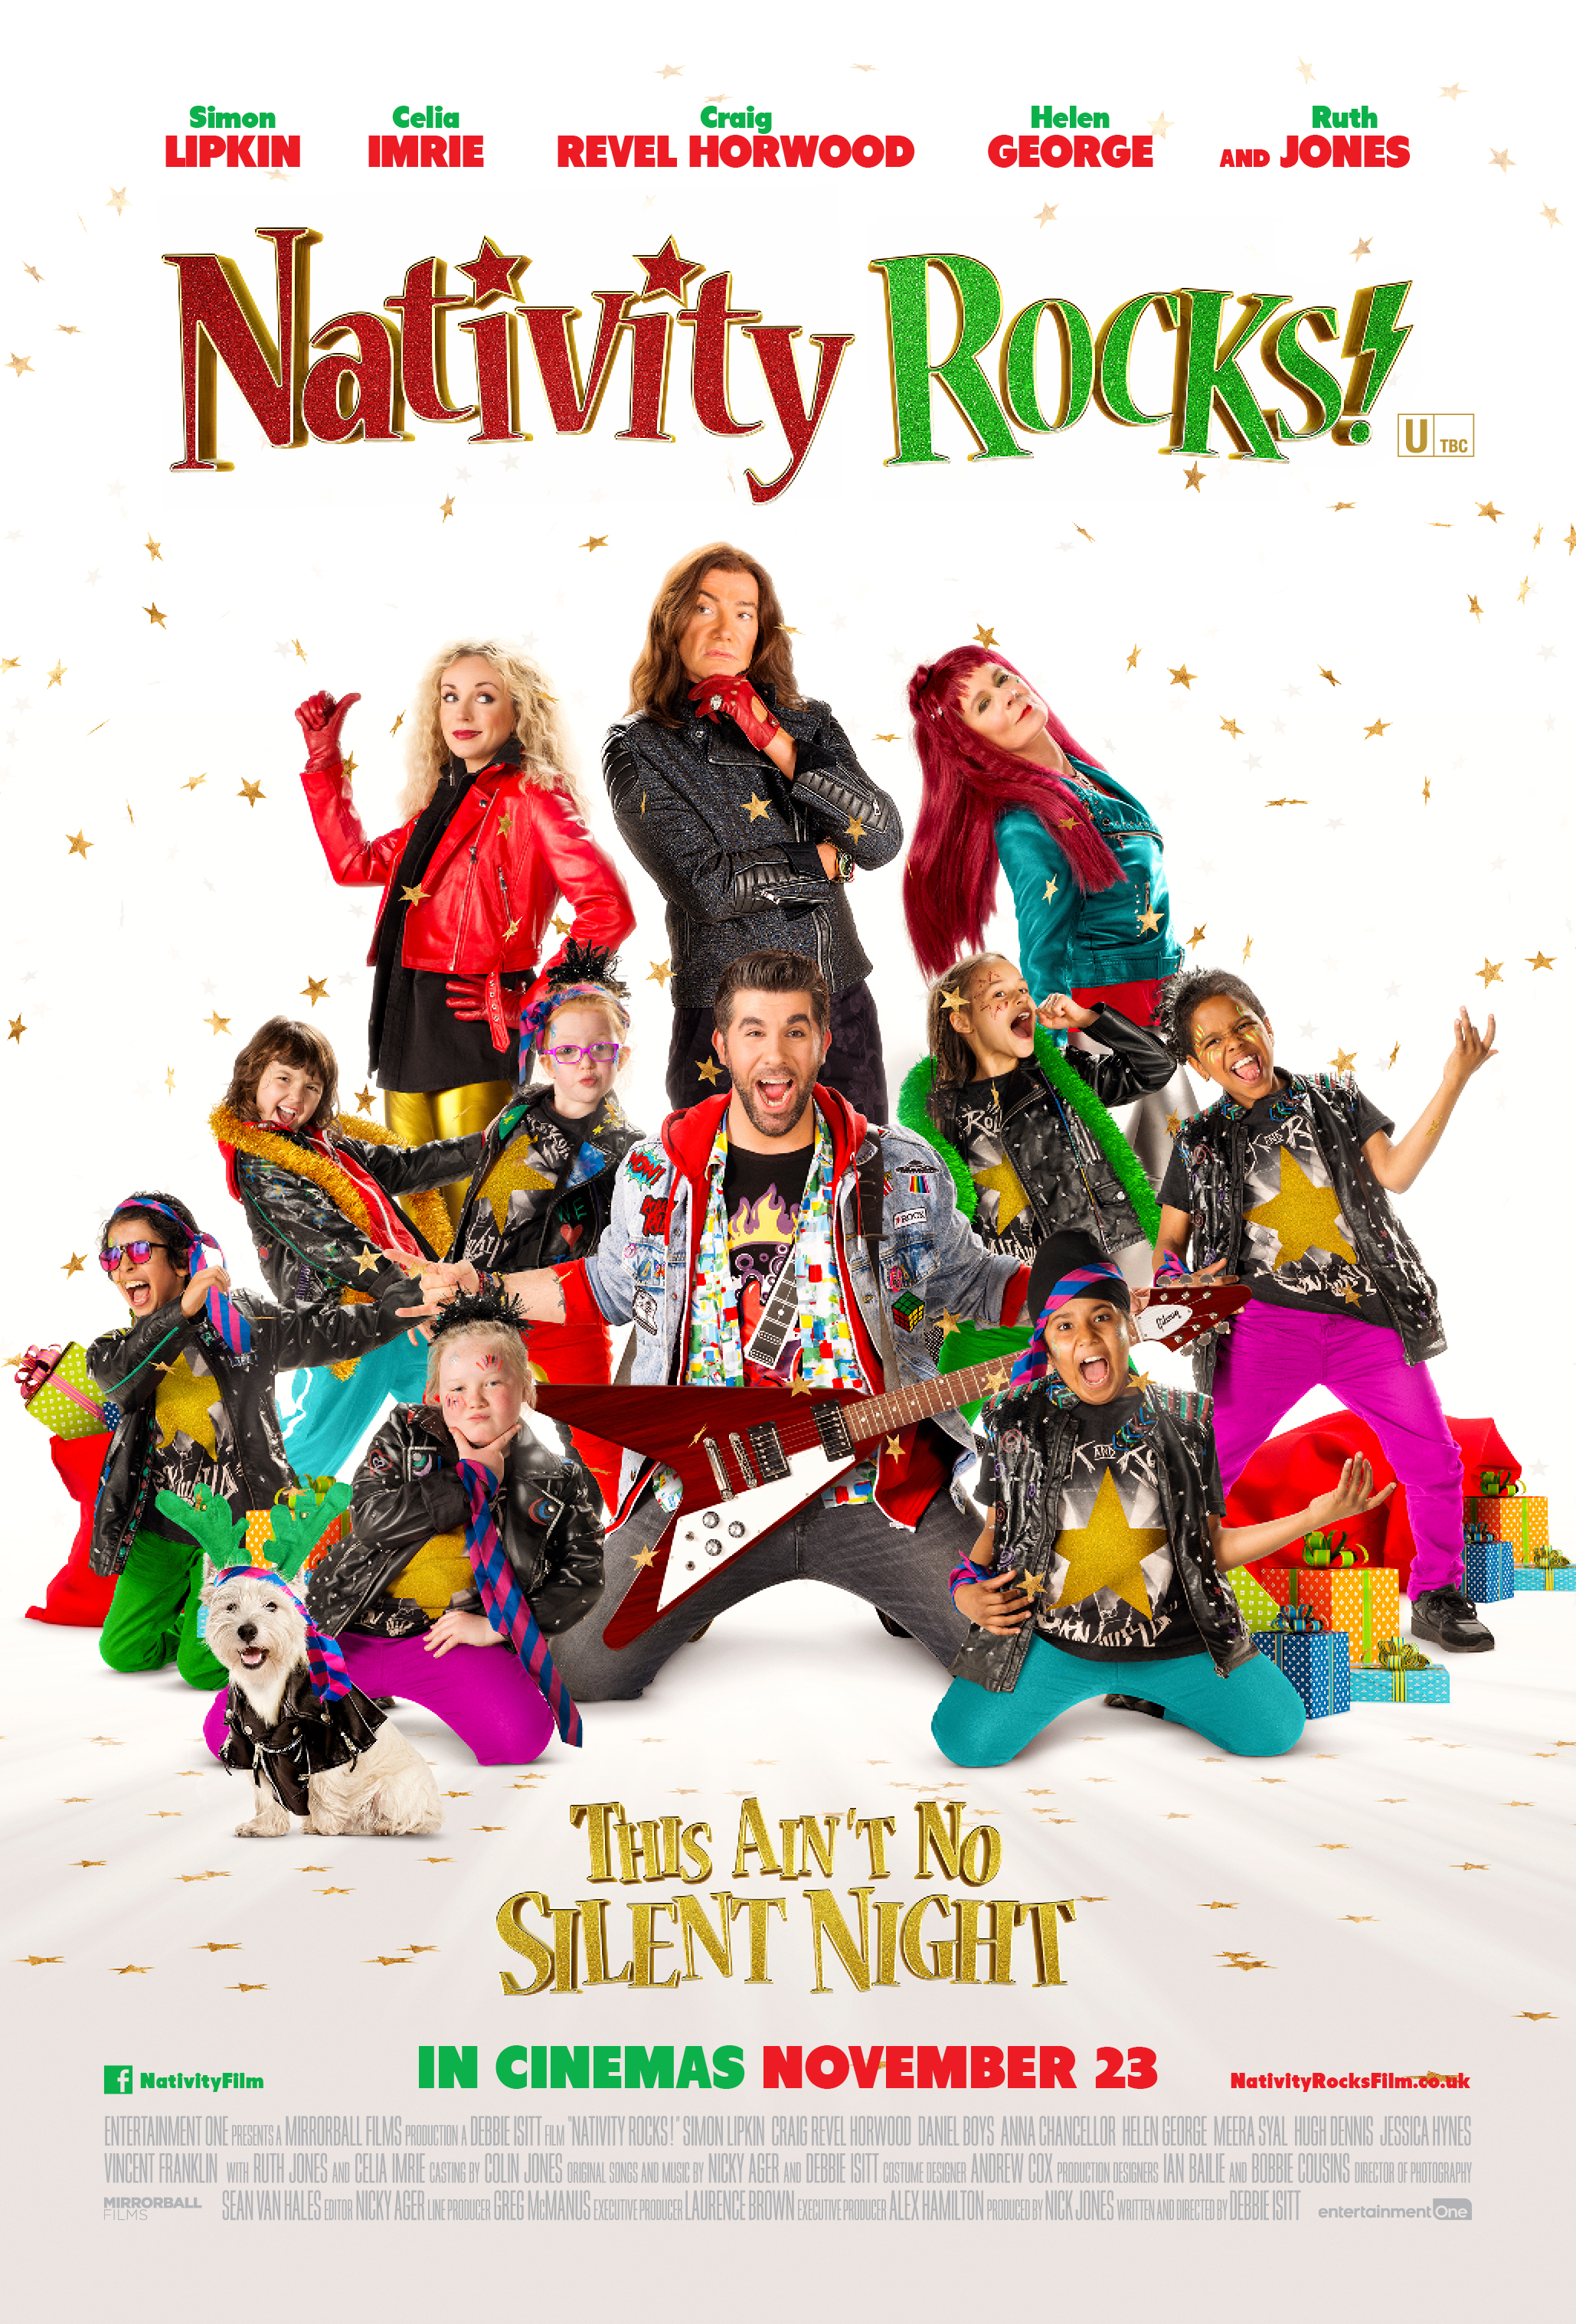 Nonton film Nativity Rocks! layarkaca21 indoxx1 ganool online streaming terbaru